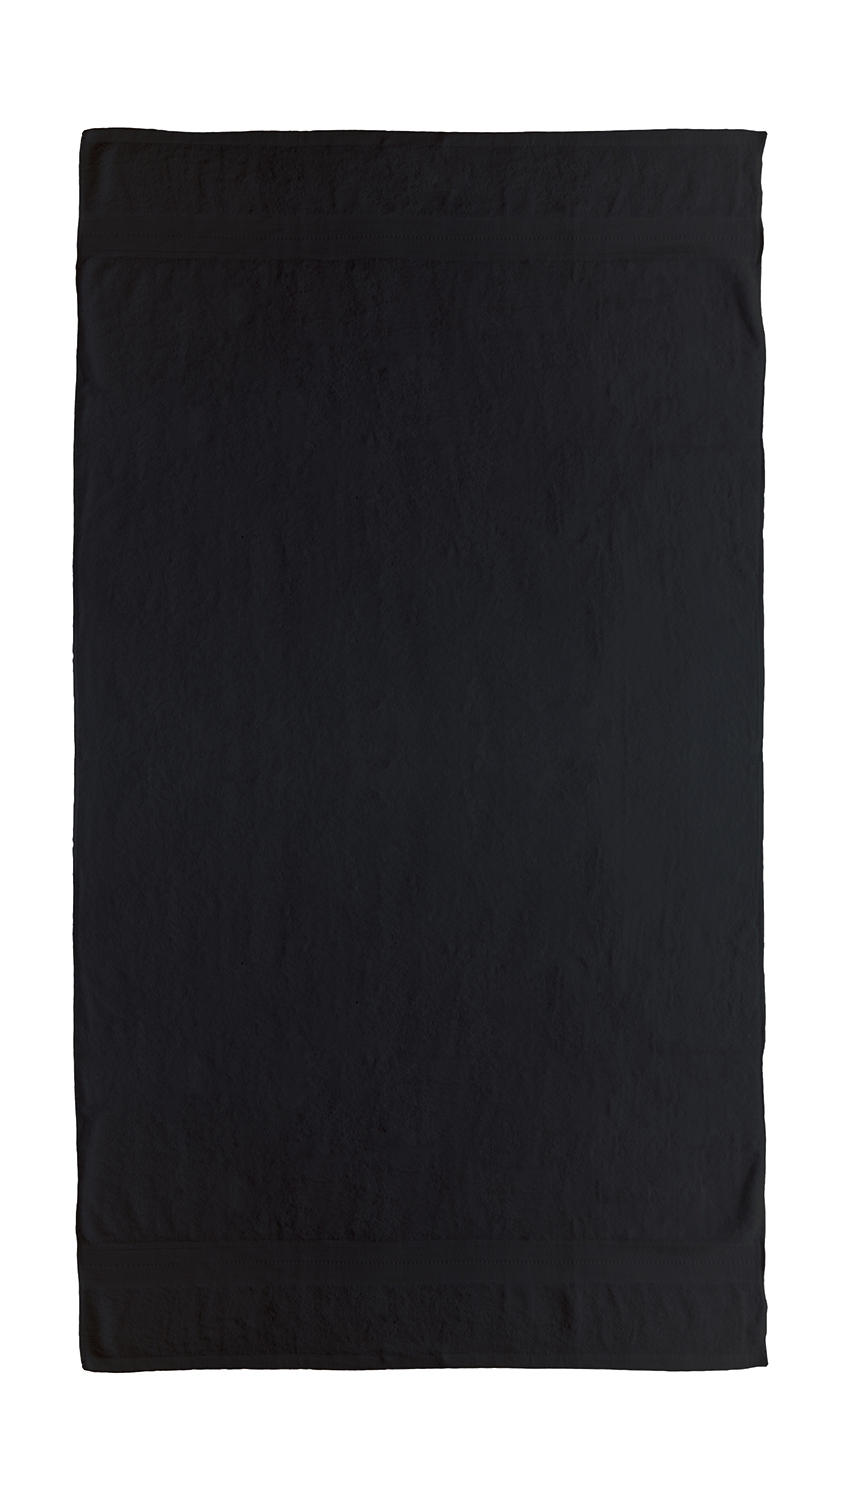 Telo mare nero 100 x 180 cm con fettuccia per appendere da